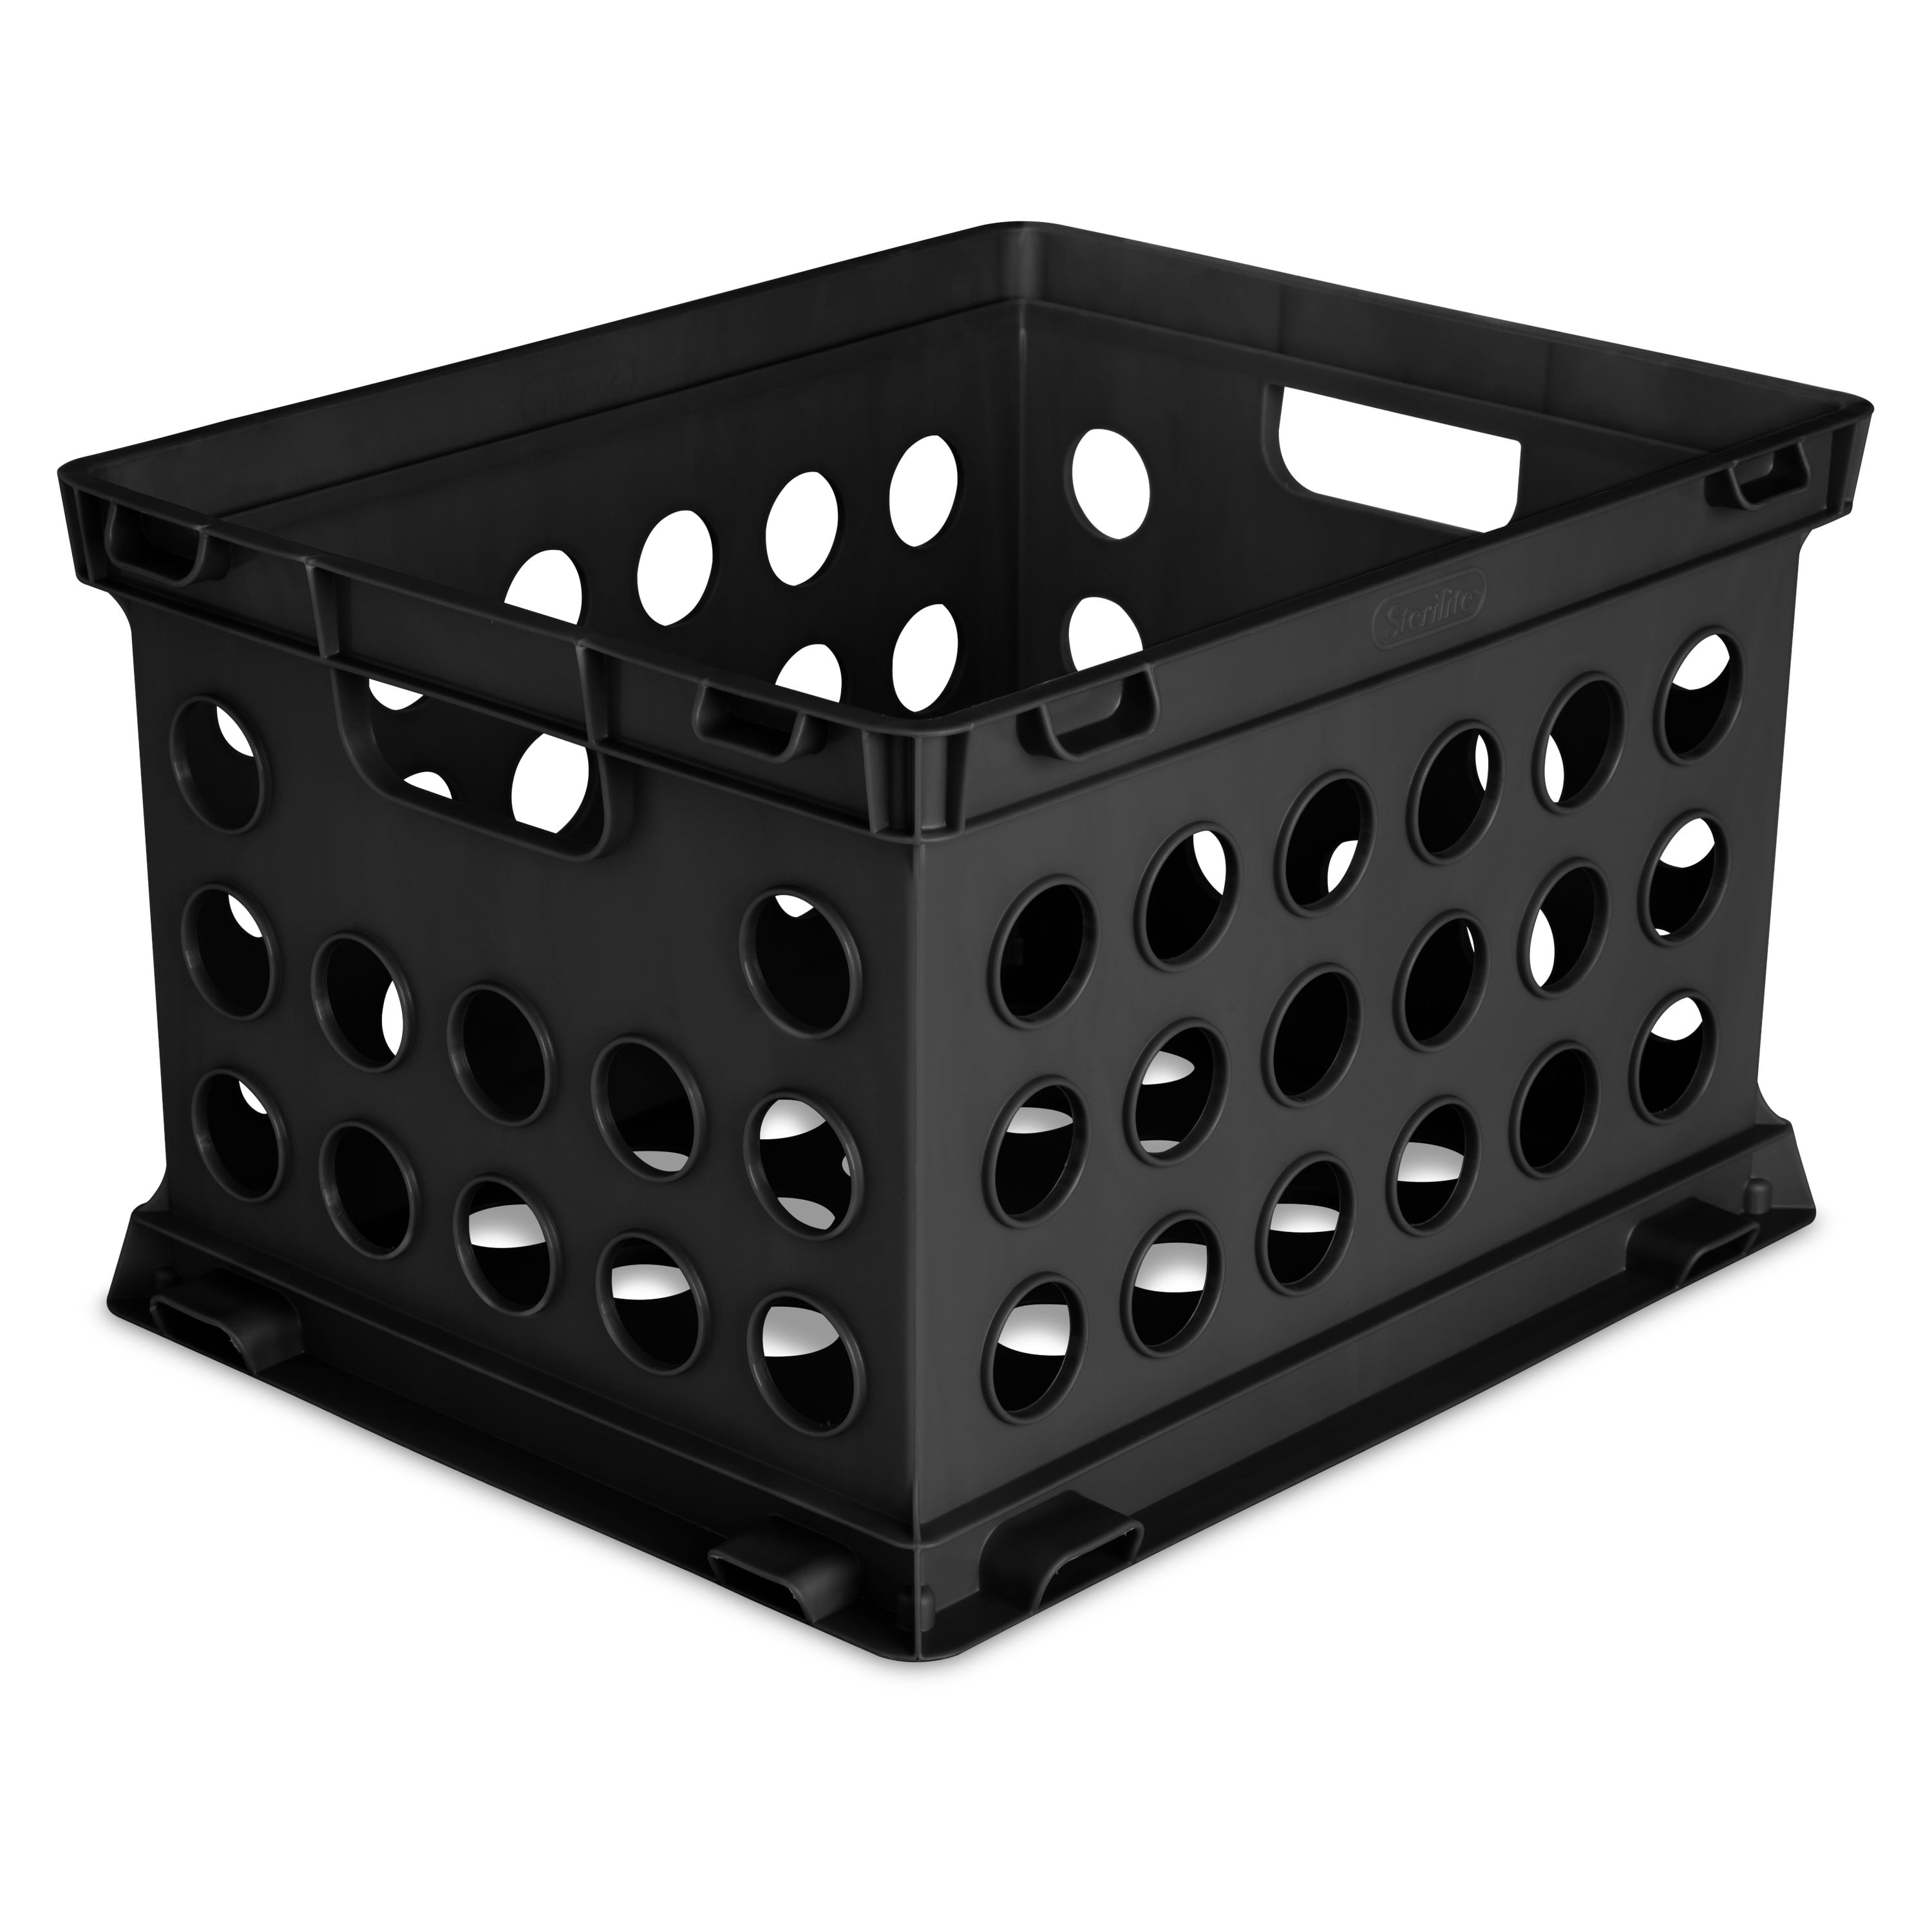 Sterilite Plastic File Crate in Black